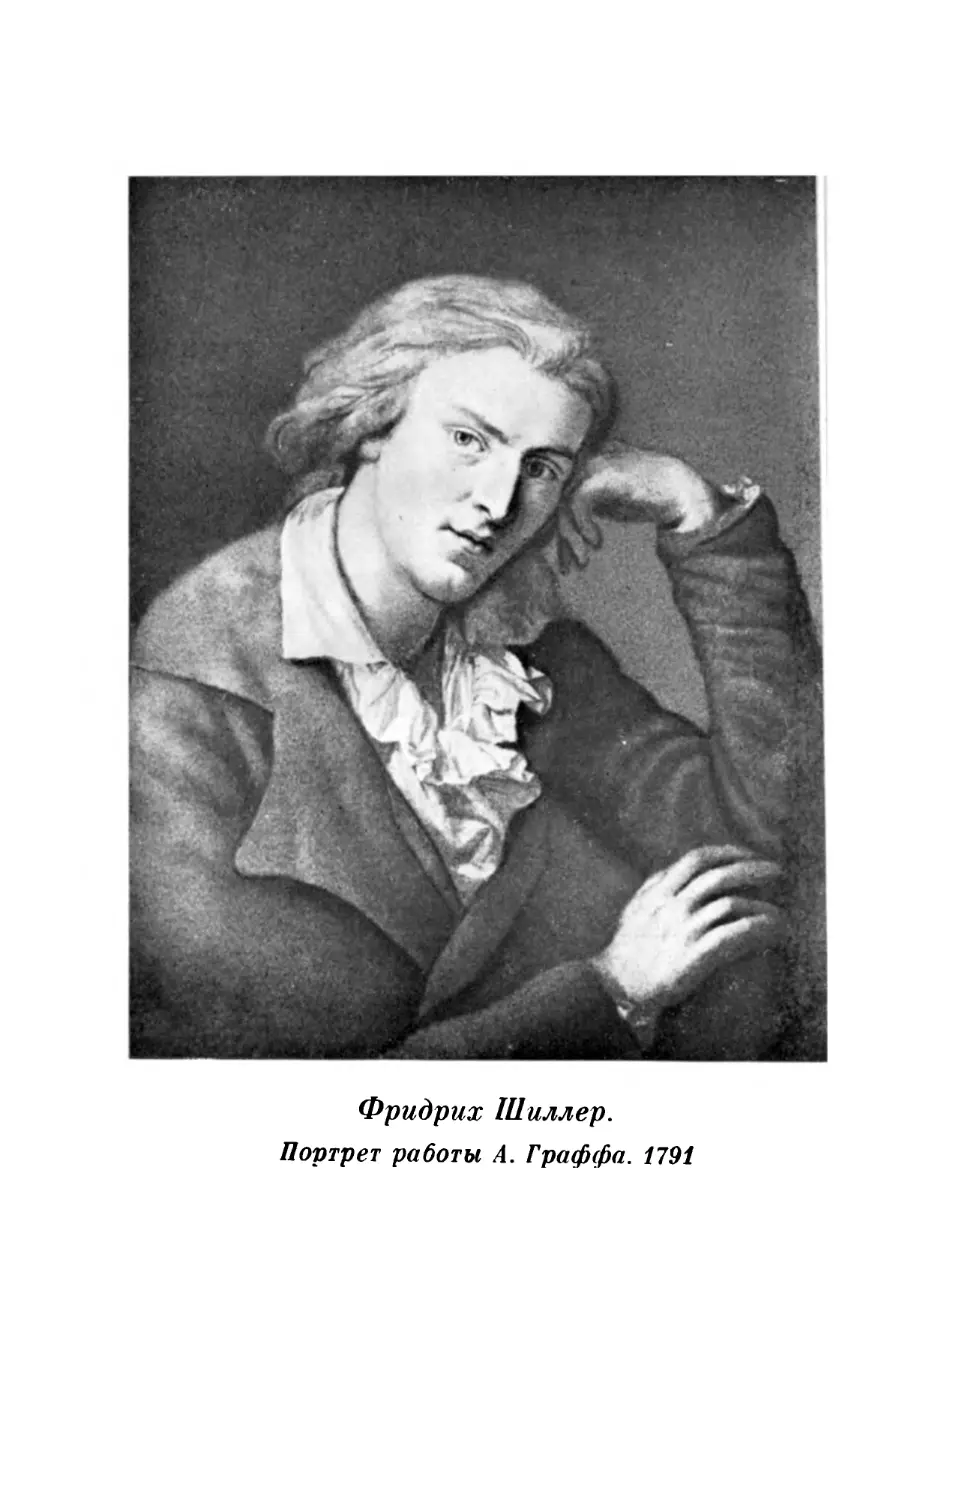 Вклейка. Фридрих Шиллер. Портрет работы А. Гаффа. 1791